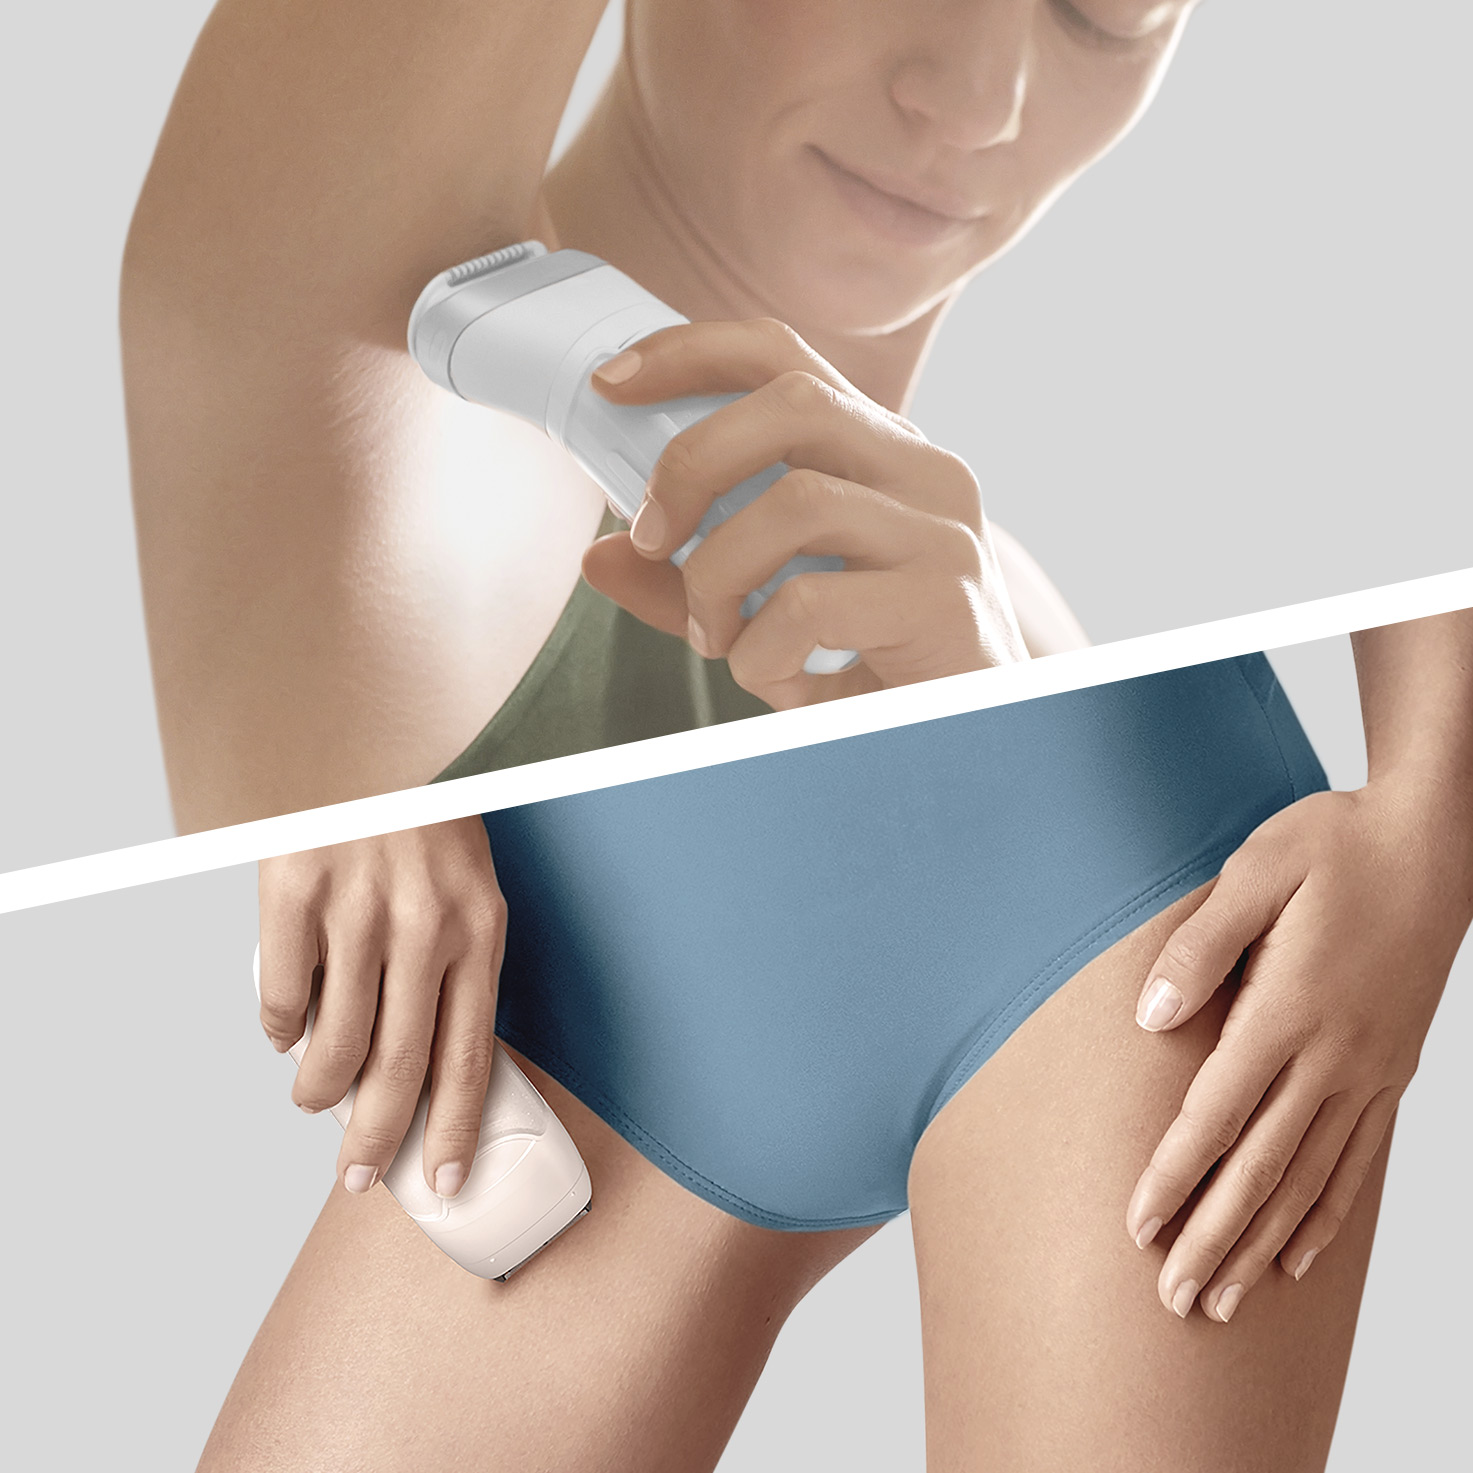 Silk-épil 9 SkinSpa SensoSmart™ с технологией Wet & Dry, дизайнерская серия